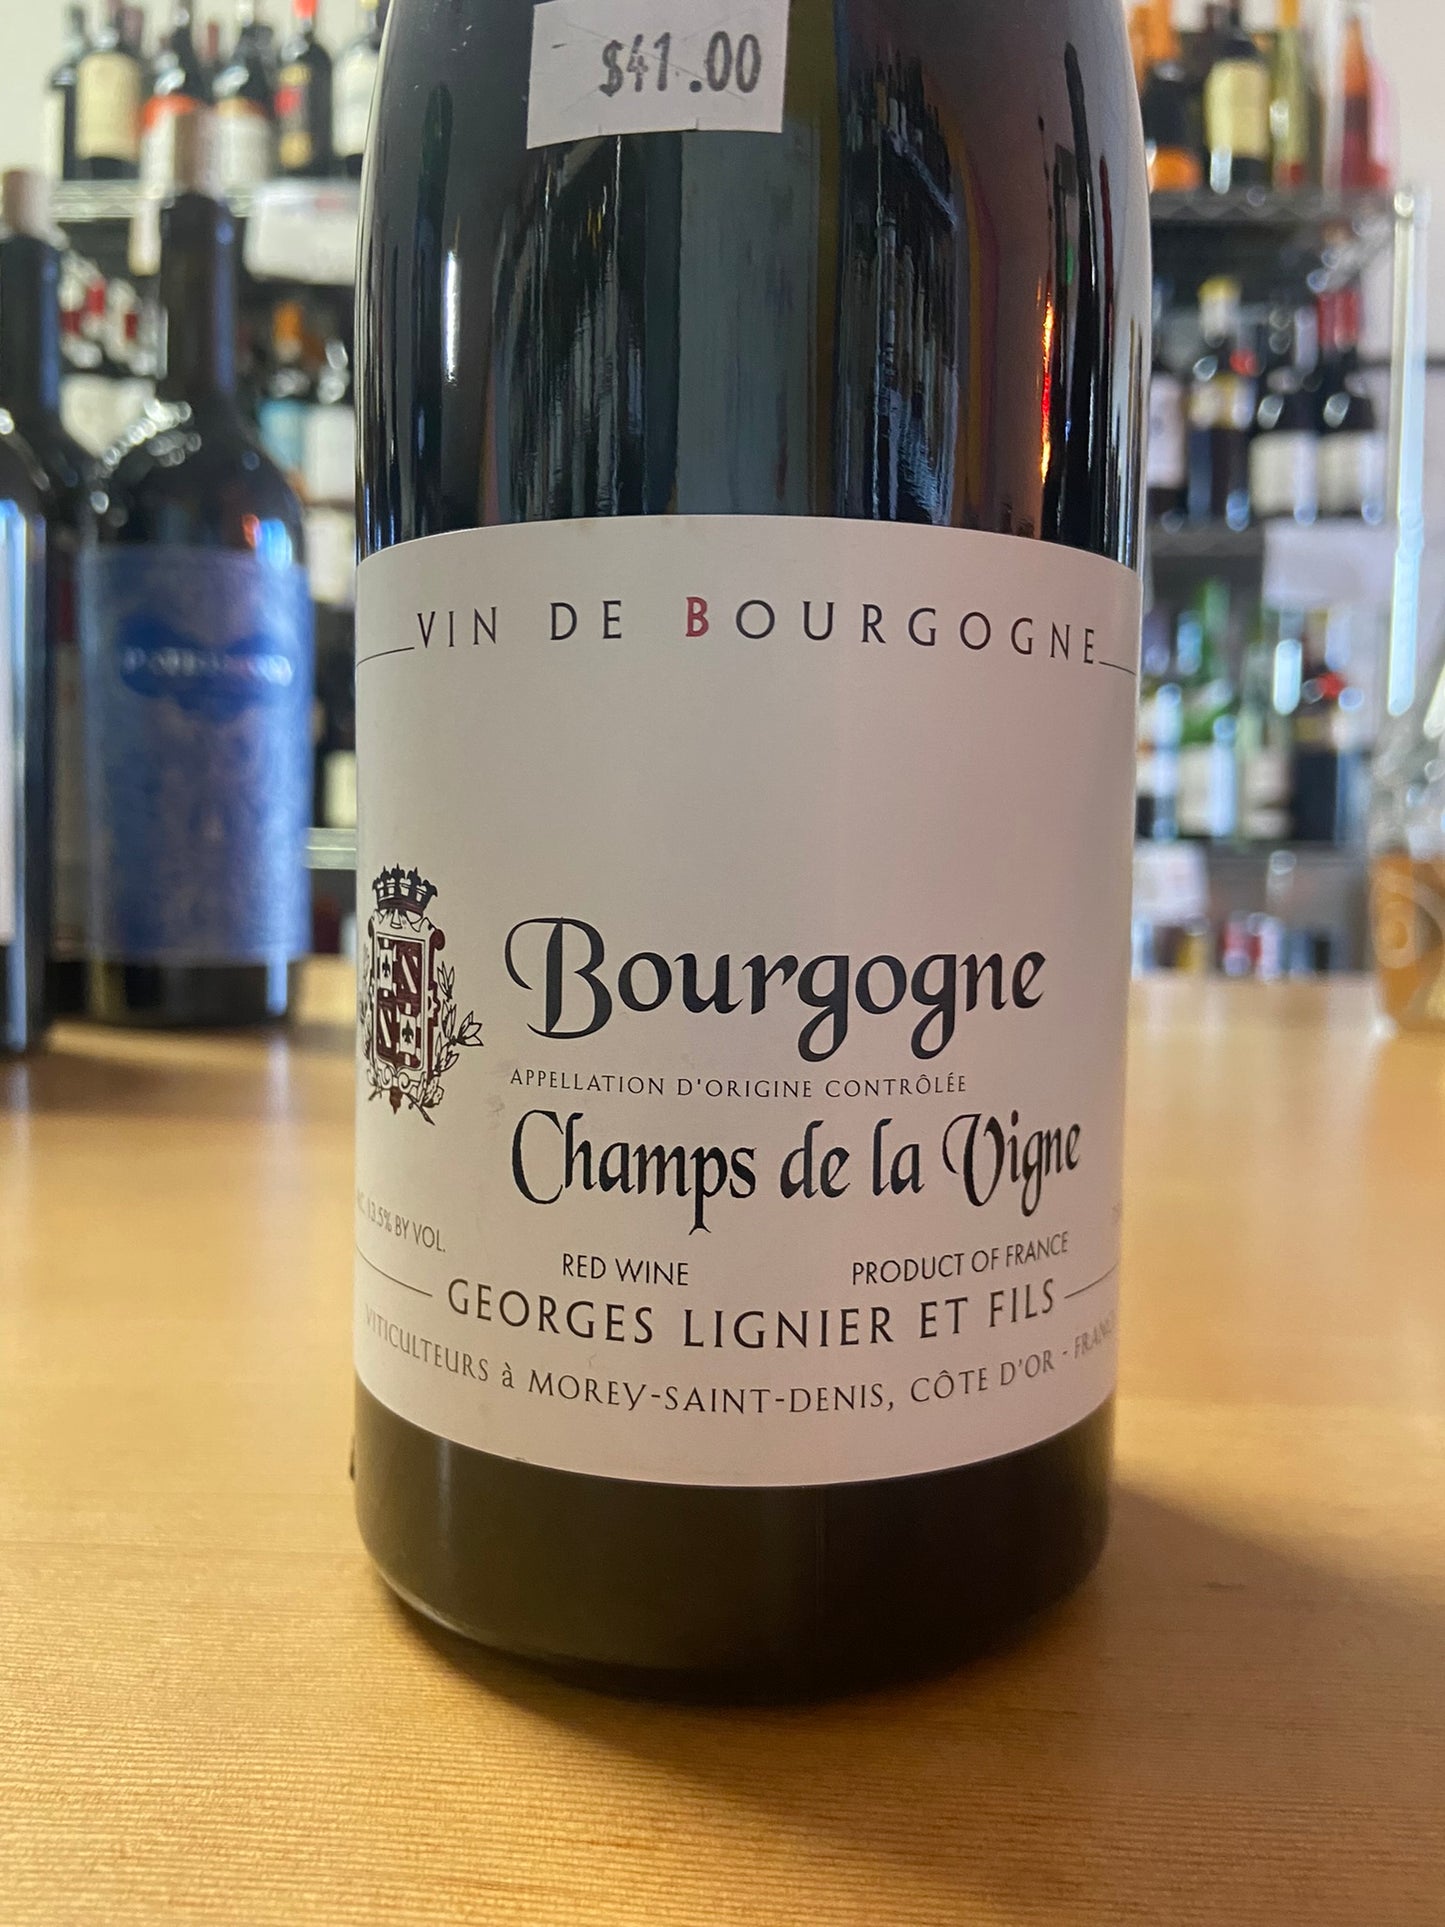 GEORGES LIGNIER ET FILS 2020 Pinot Noir 'Champs de la Vigne' (Burgundy, France)